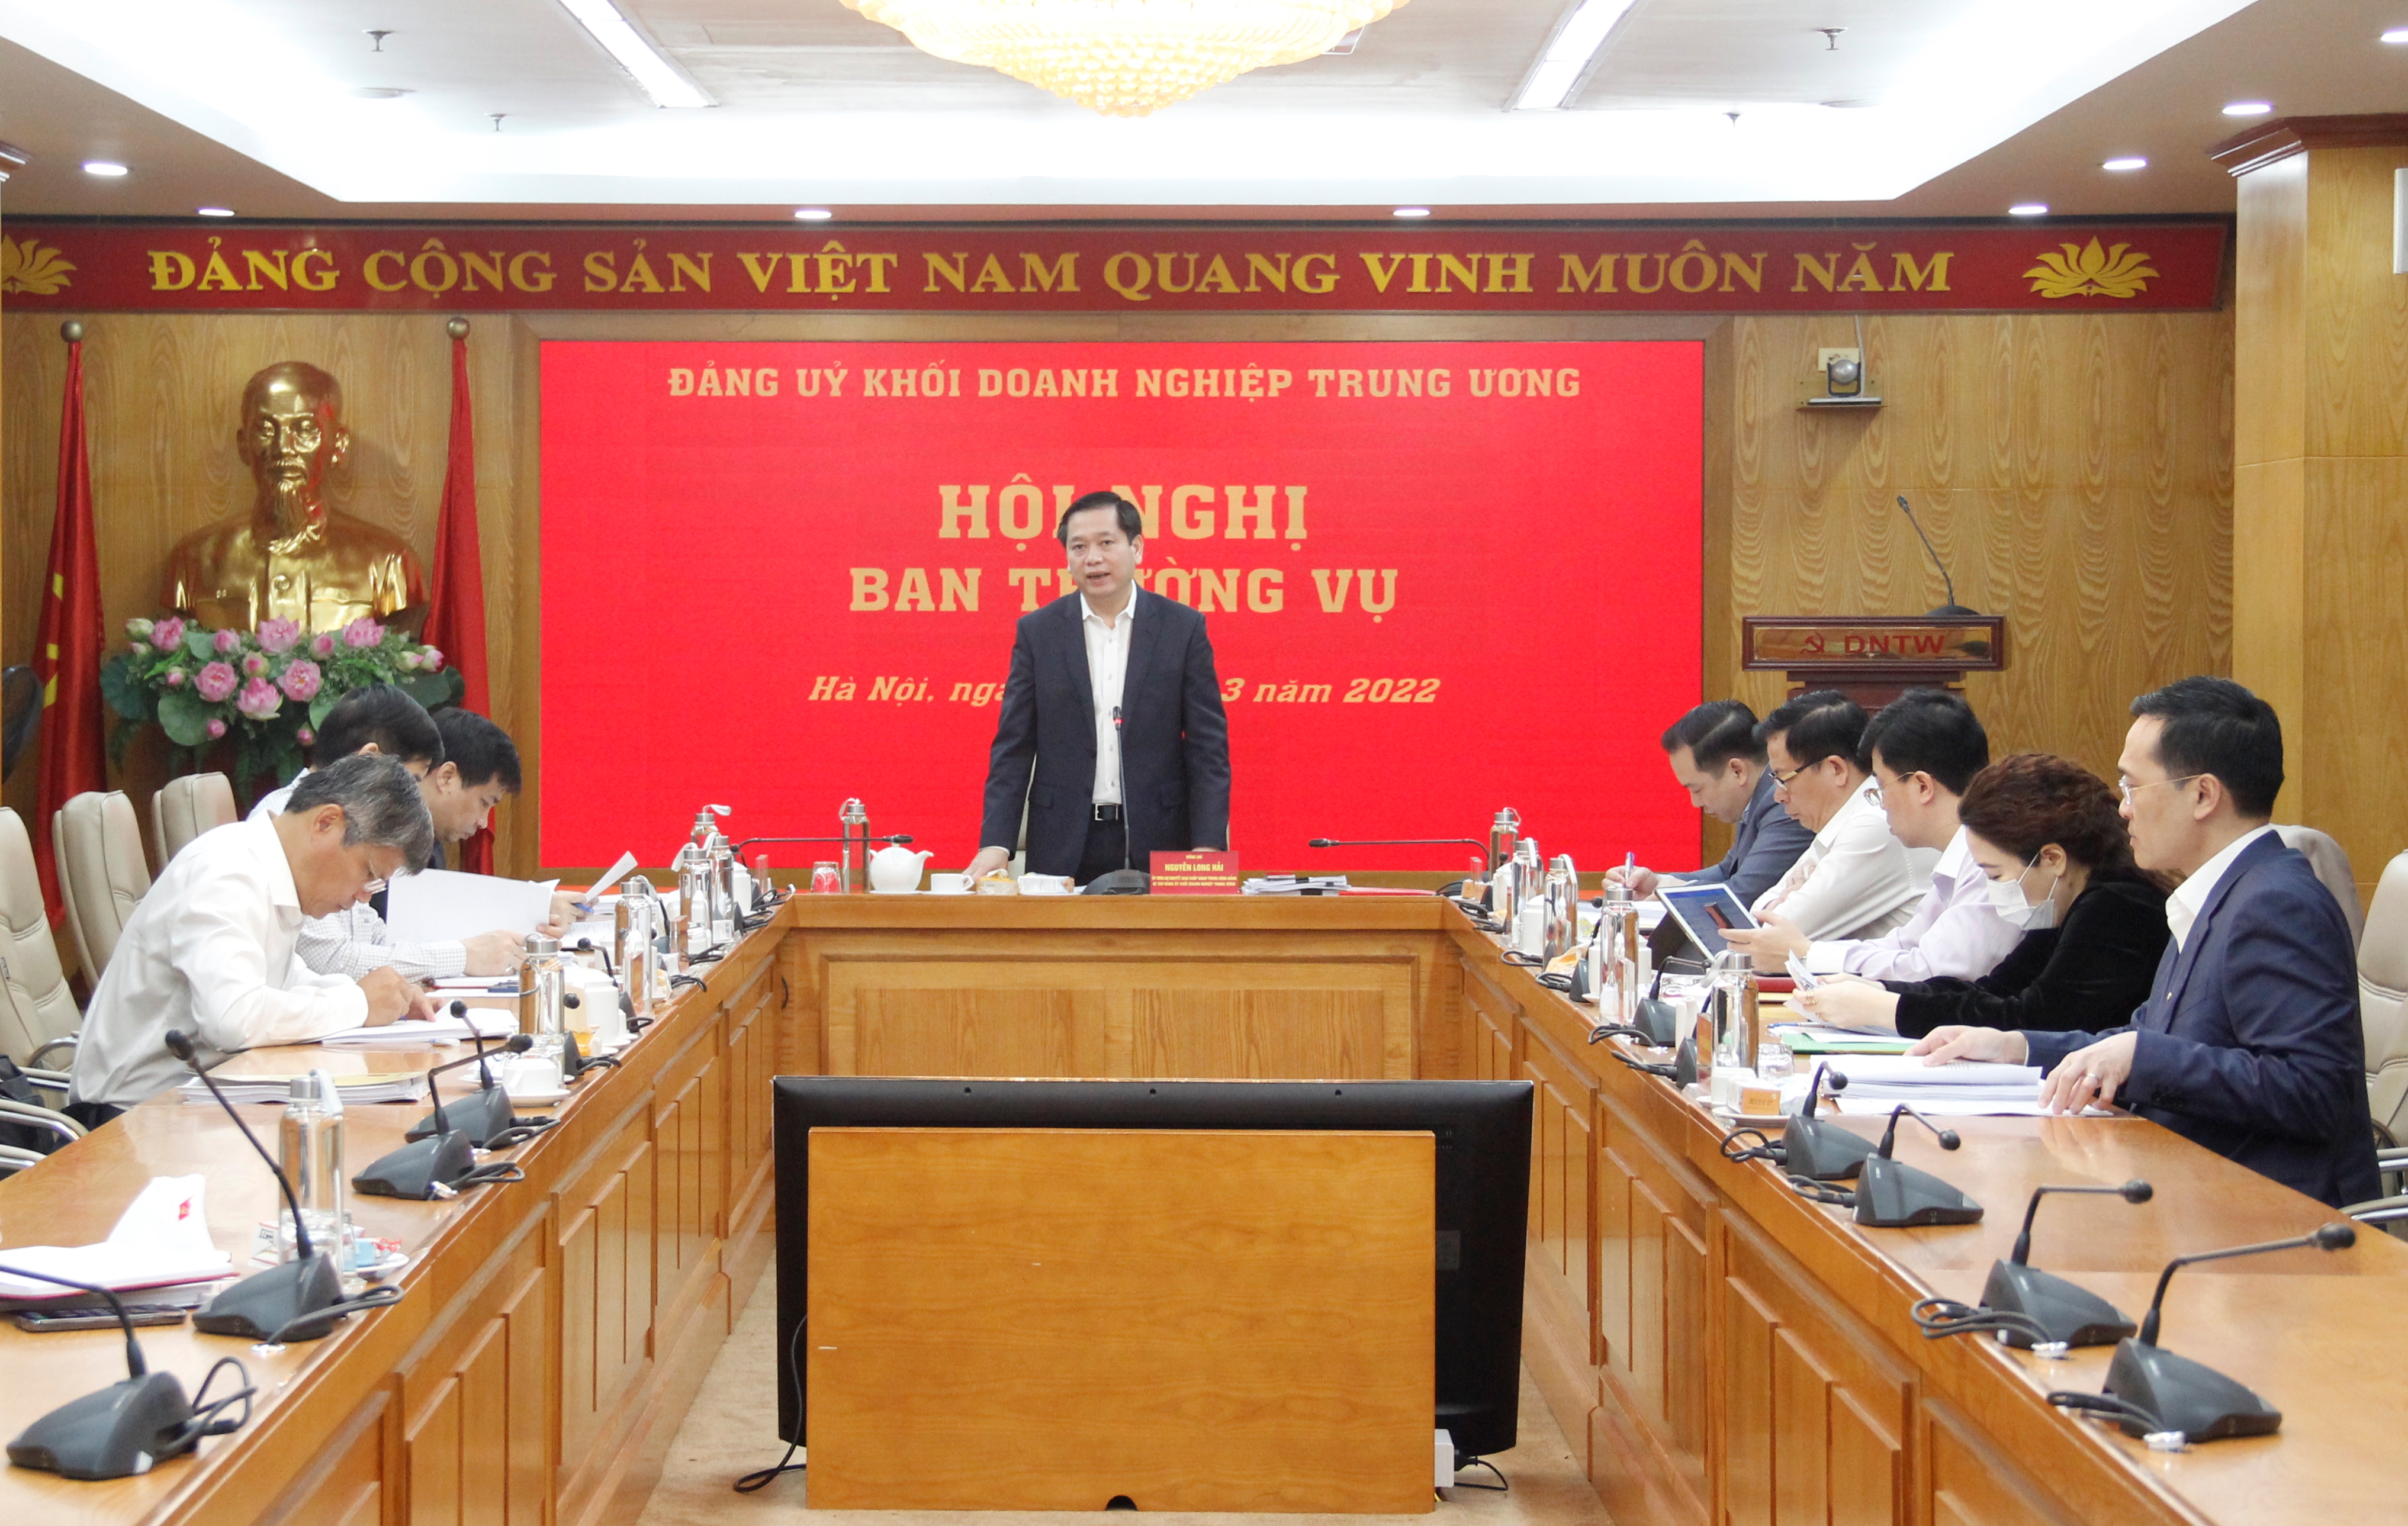 Đồng chí Nguyễn Long Hải - Bí thư Đảng ủy Khối Doanh nghiệp Trung ương chủ trì Hội nghị.